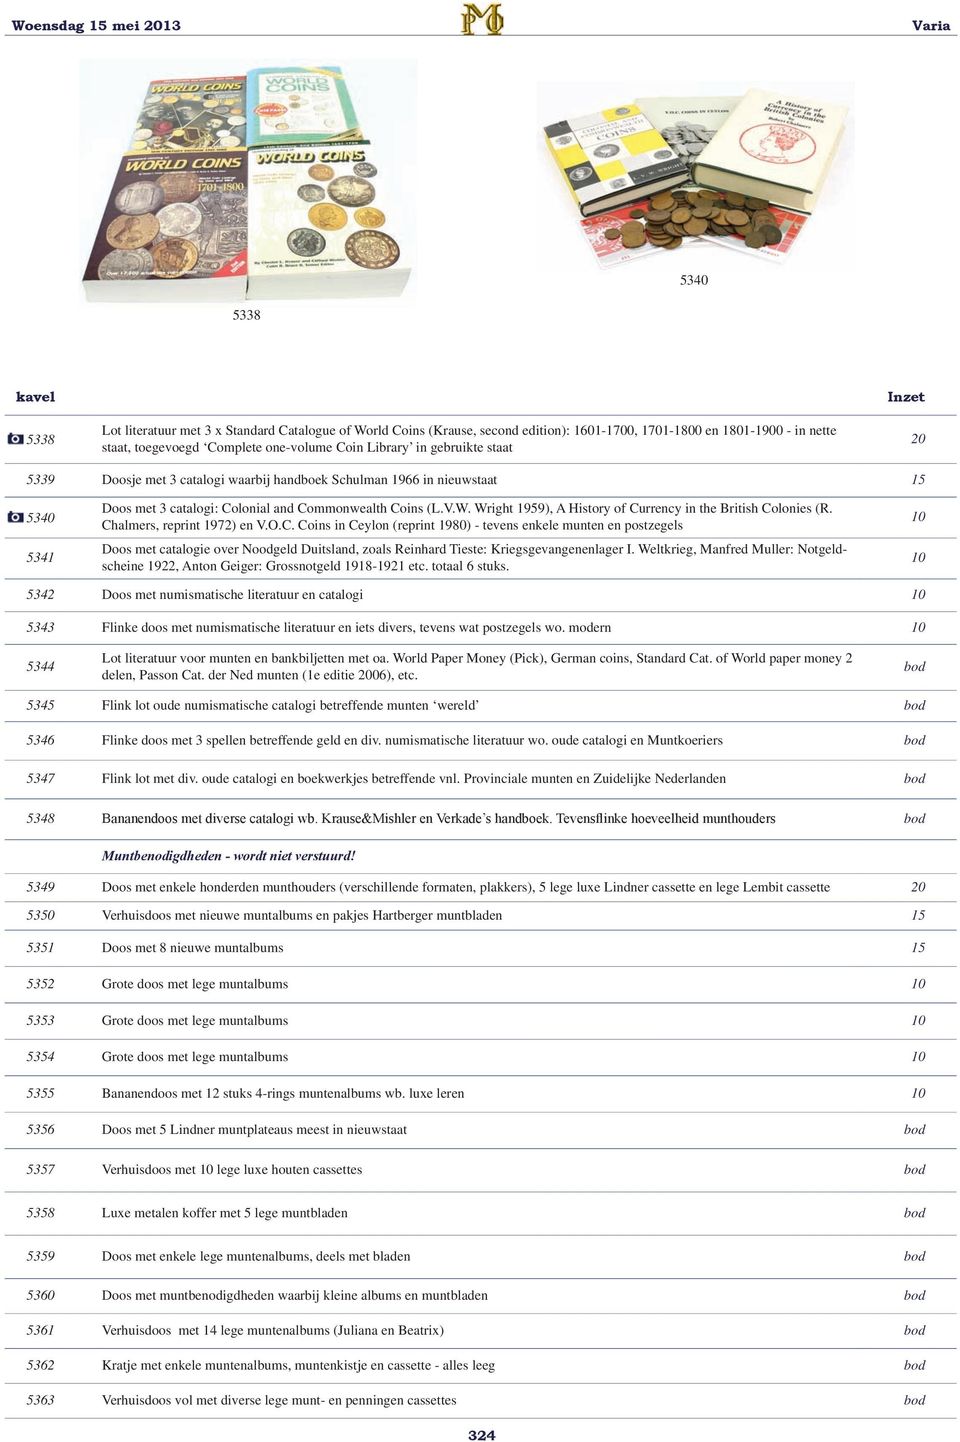 Wright 1959), A History of Currency in the British Colonies (R. Chalmers, reprint 1972) en V.O.C. Coins in Ceylon (reprint 1980) - tevens enkele munten en postzegels Doos met catalogie over Noodgeld Duitsland, zoals Reinhard Tieste: Kriegsgevangenenlager I.